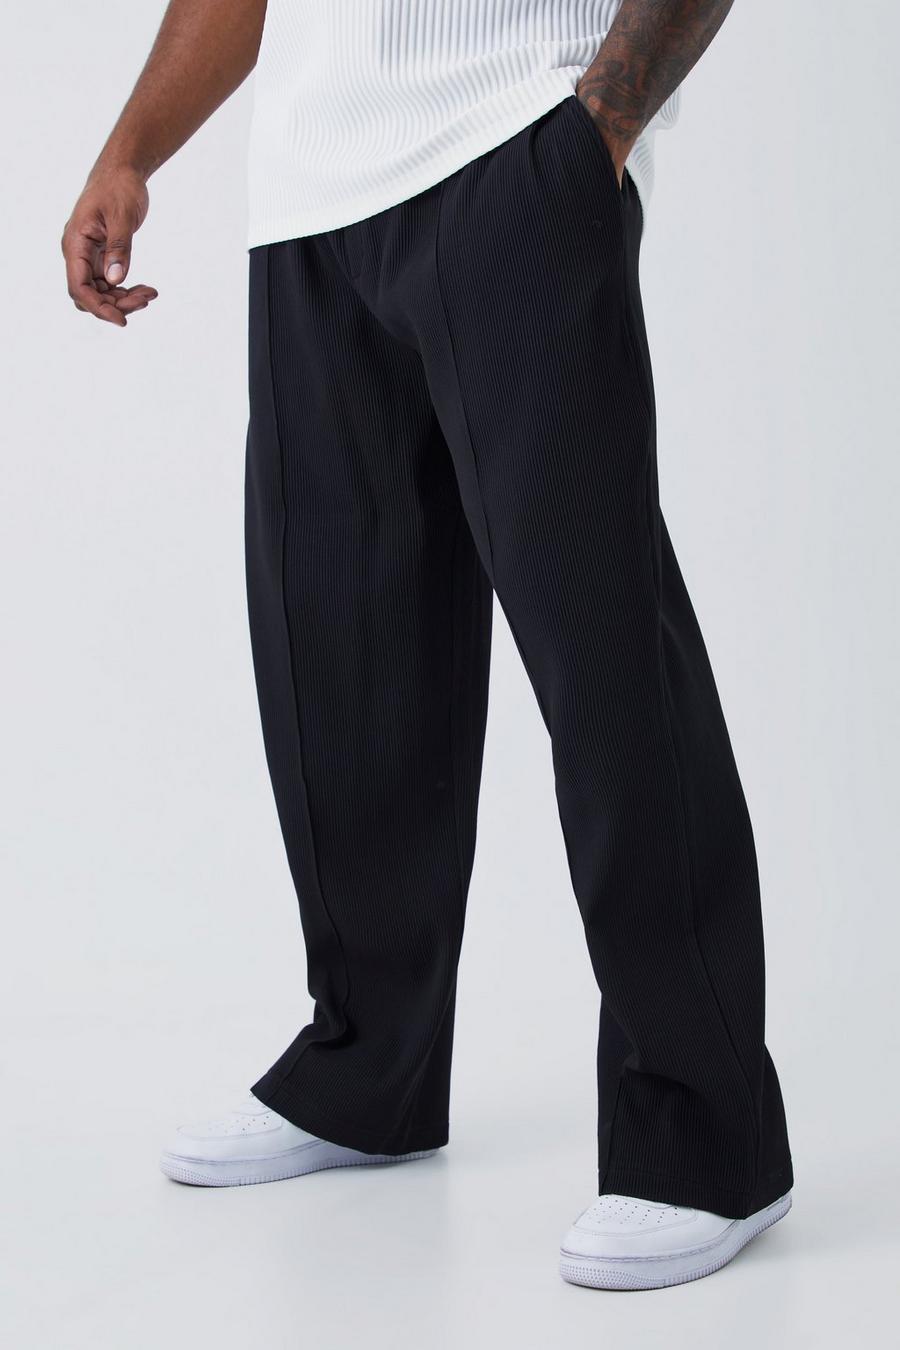 Pantaloni Plus Size rilassati con pieghe e vita elasticizzata, Black